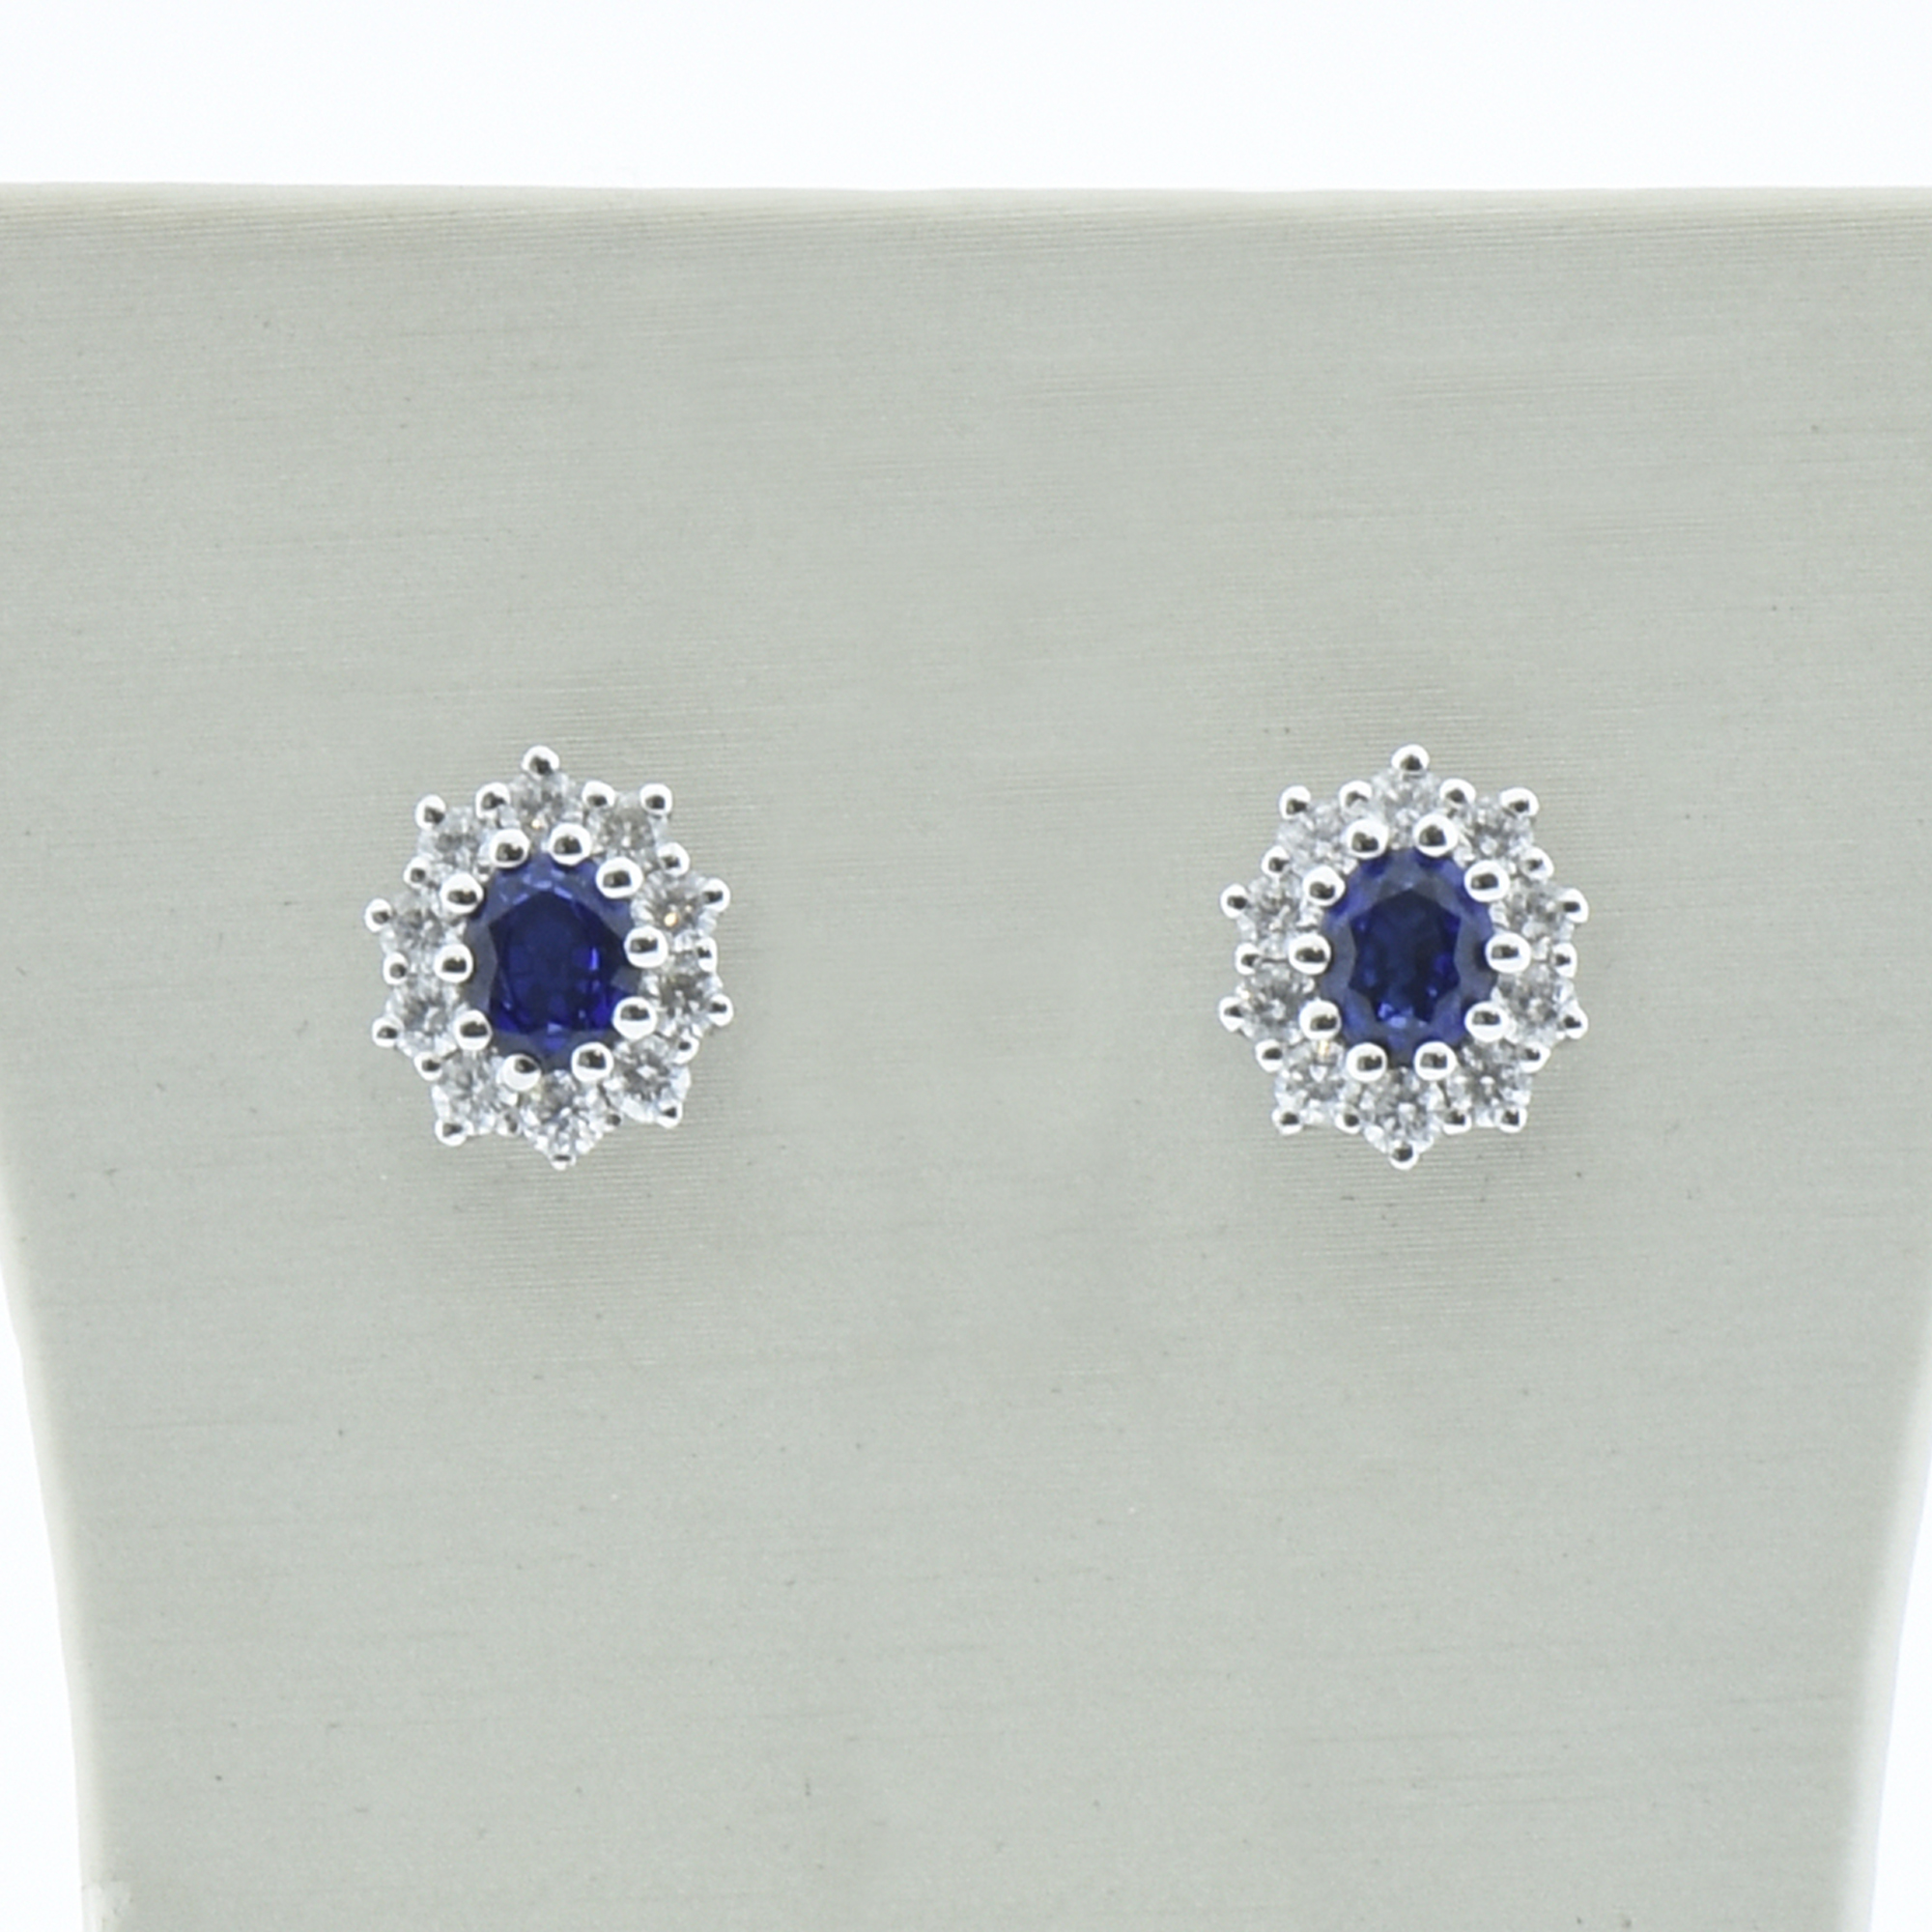 Davite delucchi Orecchini zaffiro blu oro 750# diamanti 0,62 ct F/vs. Zaffiri blu naturali 1,00ct